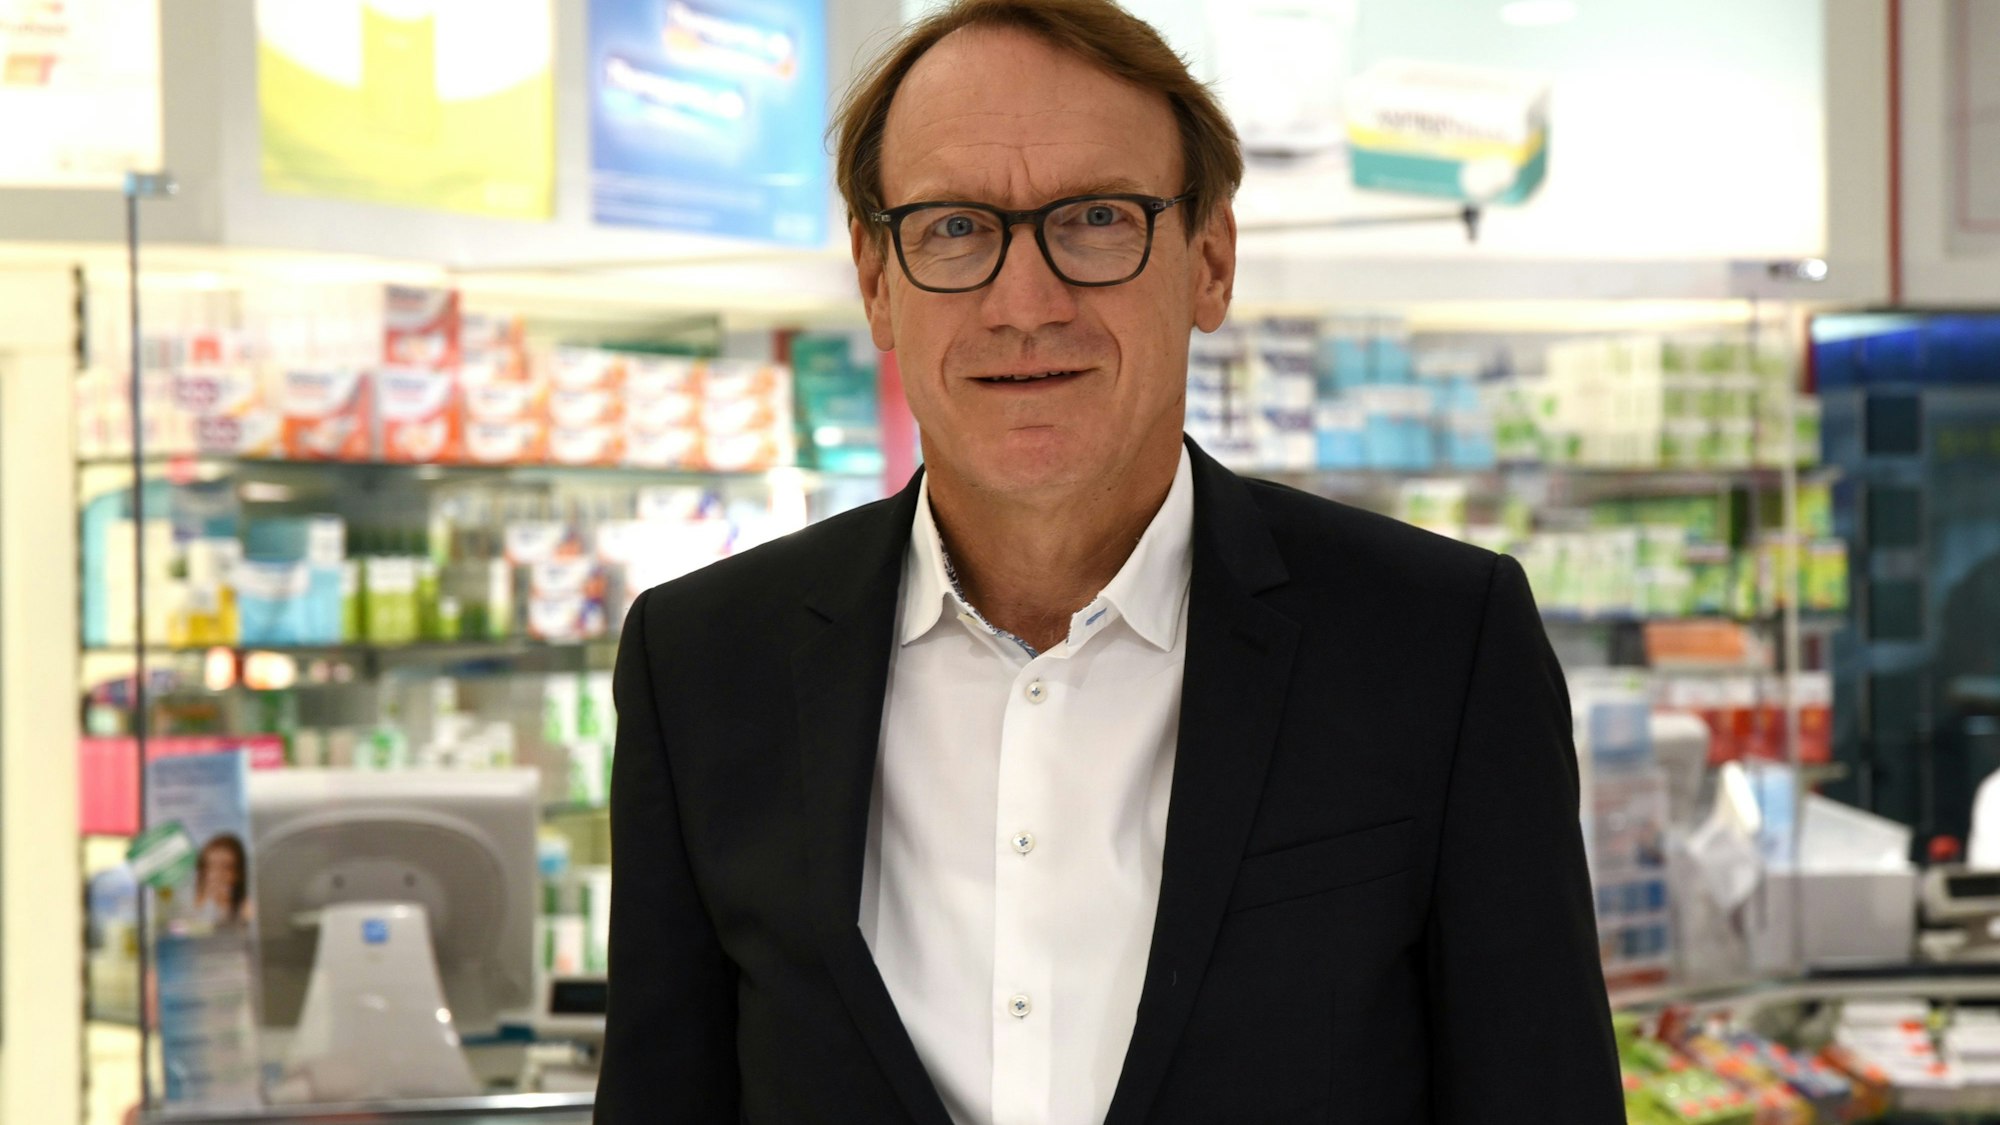 
Thomas Preis, Vorsitzender des Apothekenverbandes Nordrhein e.V.